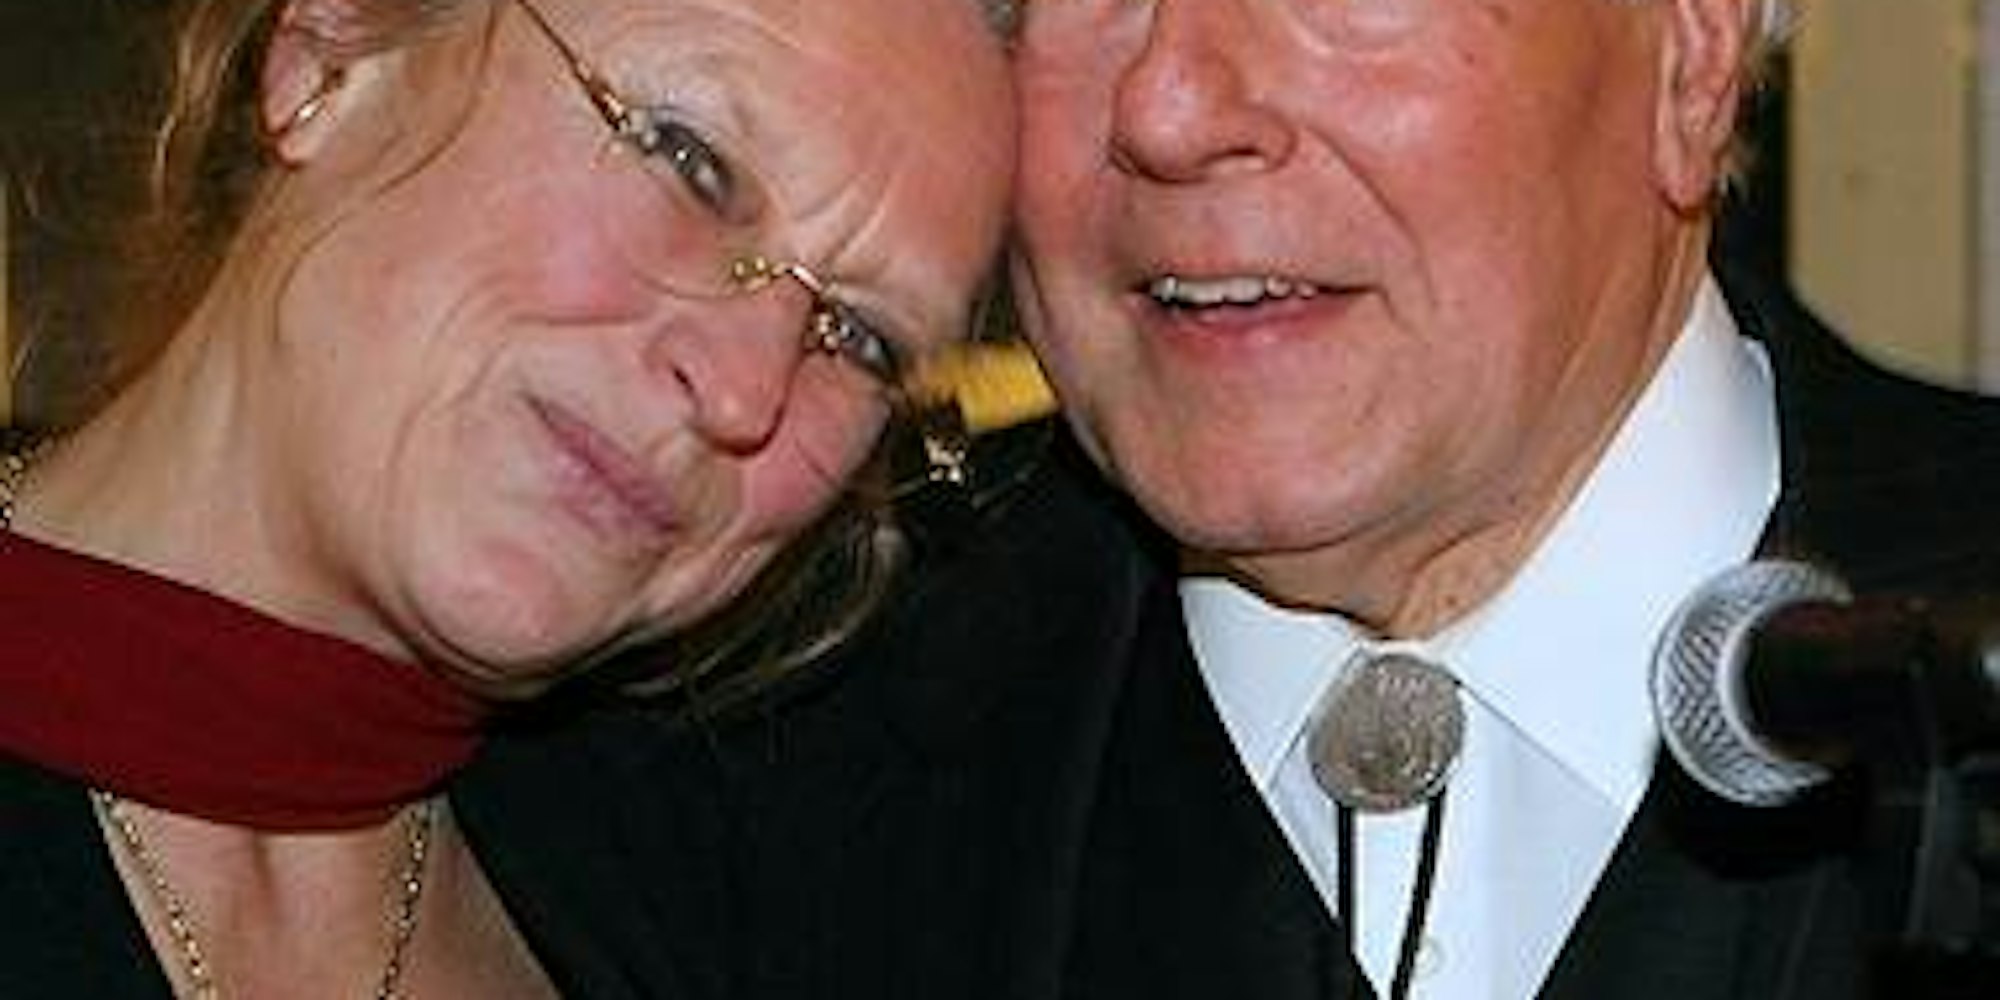 Juli 2007: Heimliche Hochzeit - Norbert Burger gab während seiner Geburtstagsfeier in der Bastei seine Hochzeit mit Claudia Hövel bekannt. (Bild: Express)